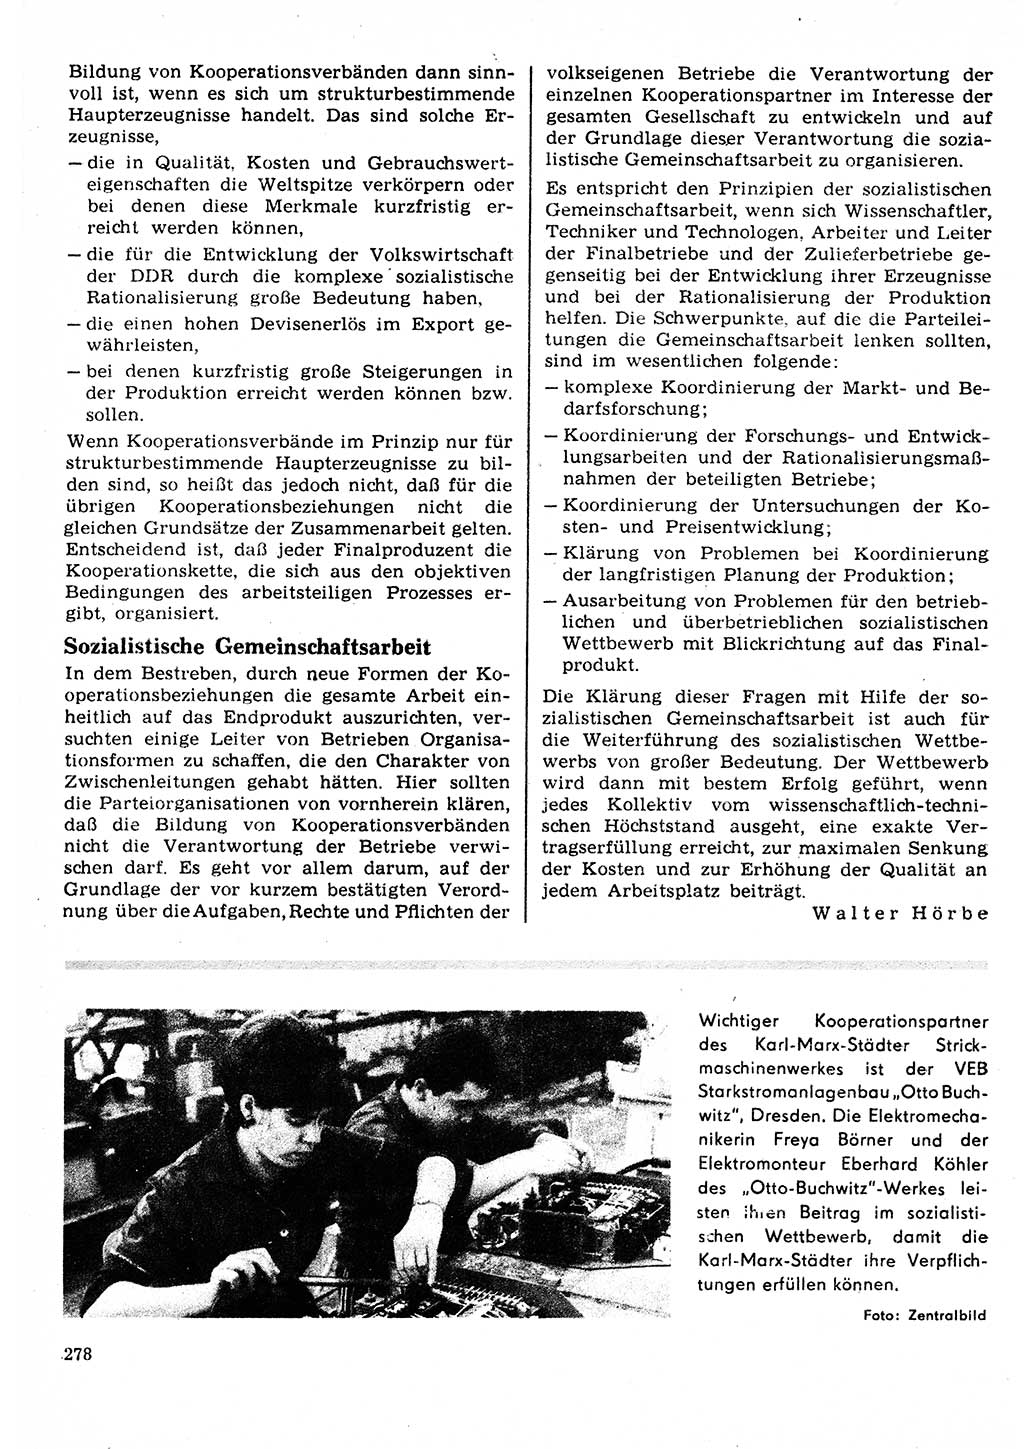 Neuer Weg (NW), Organ des Zentralkomitees (ZK) der SED (Sozialistische Einheitspartei Deutschlands) für Fragen des Parteilebens, 22. Jahrgang [Deutsche Demokratische Republik (DDR)] 1967, Seite 278 (NW ZK SED DDR 1967, S. 278)